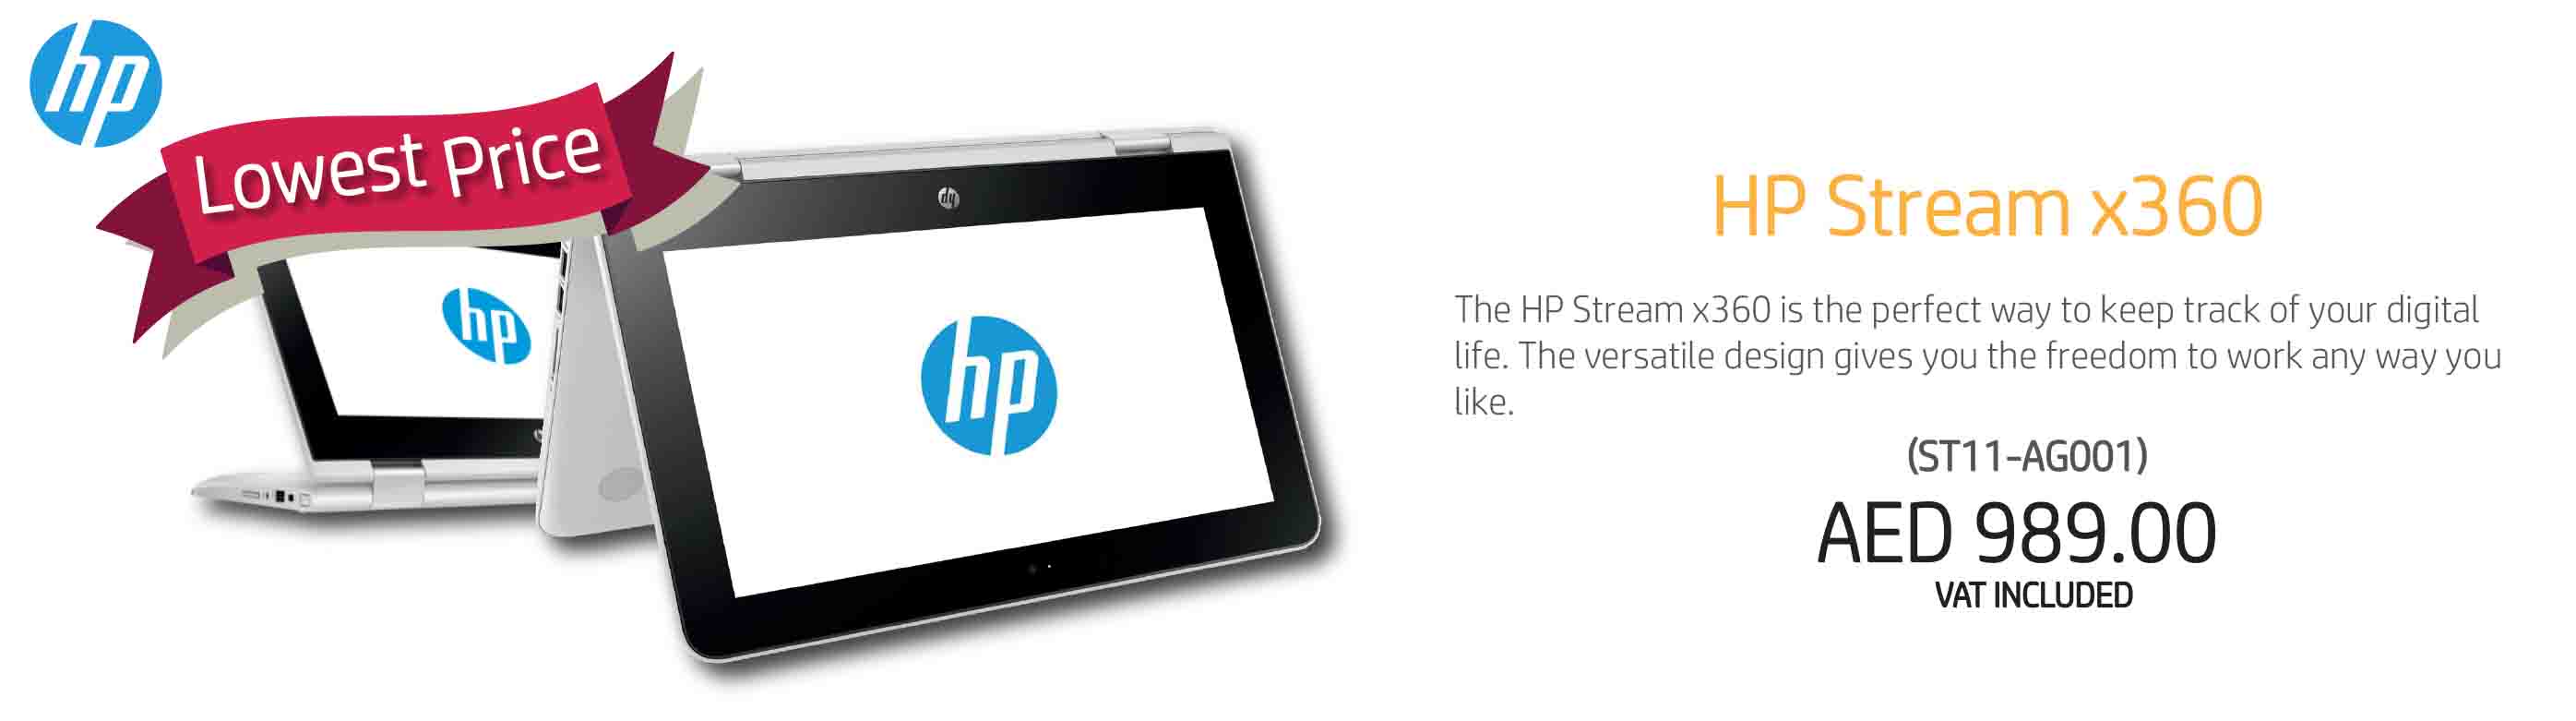 HP Stream CelN3060 RAM 4GB , 32GB,11 inch Windows 10 (ST11-AG001)